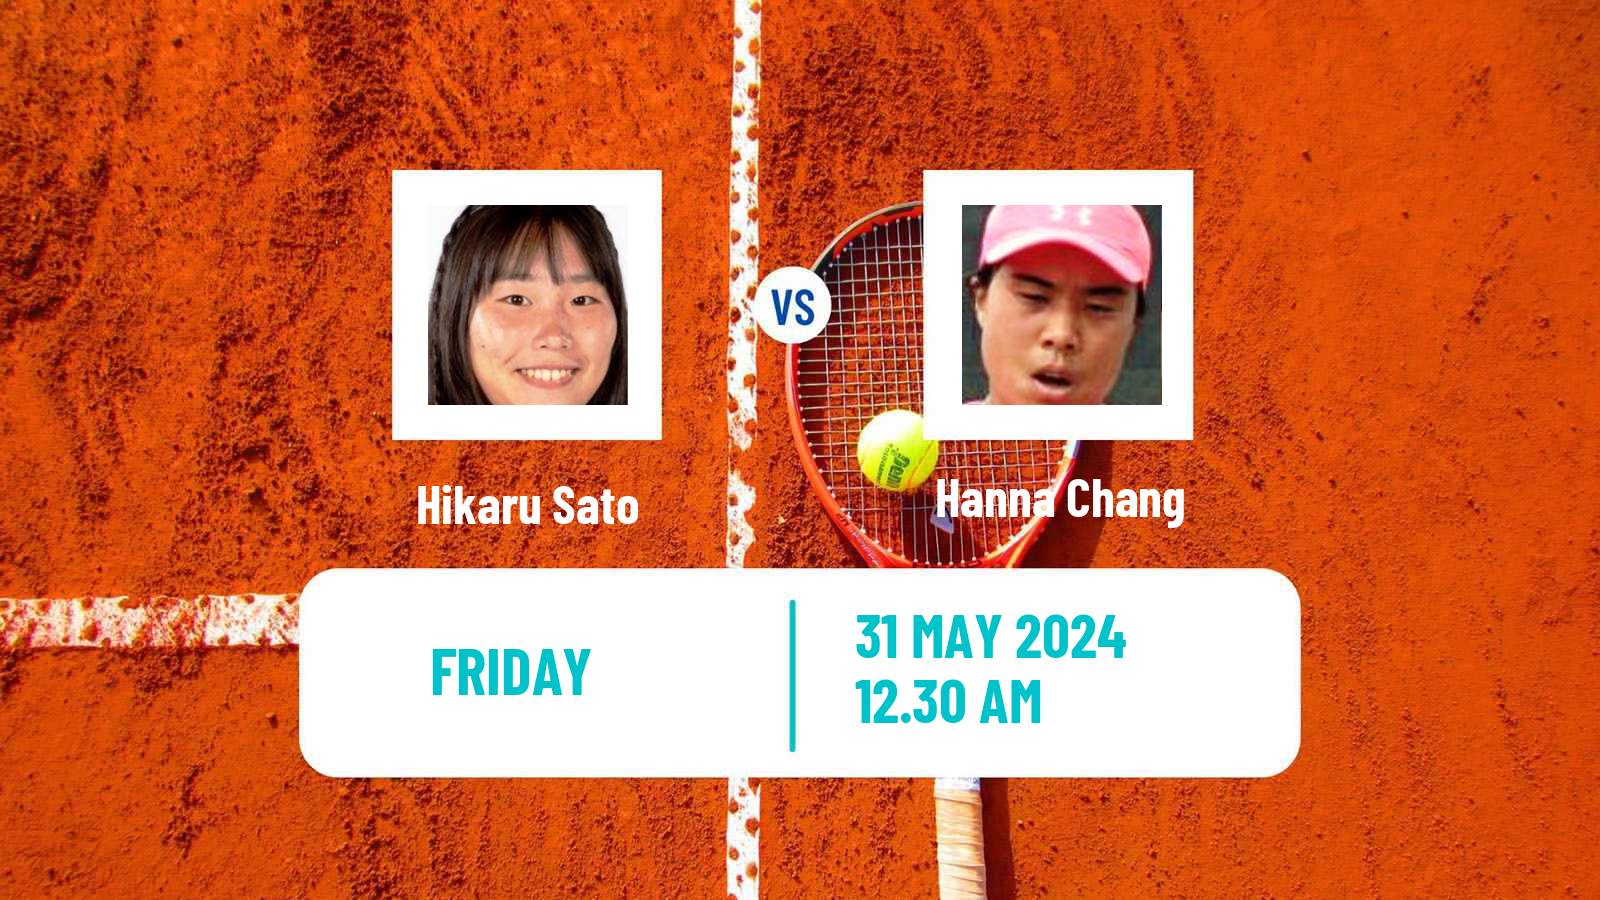 Tennis ITF W35 Changwon Women Hikaru Sato - Hanna Chang